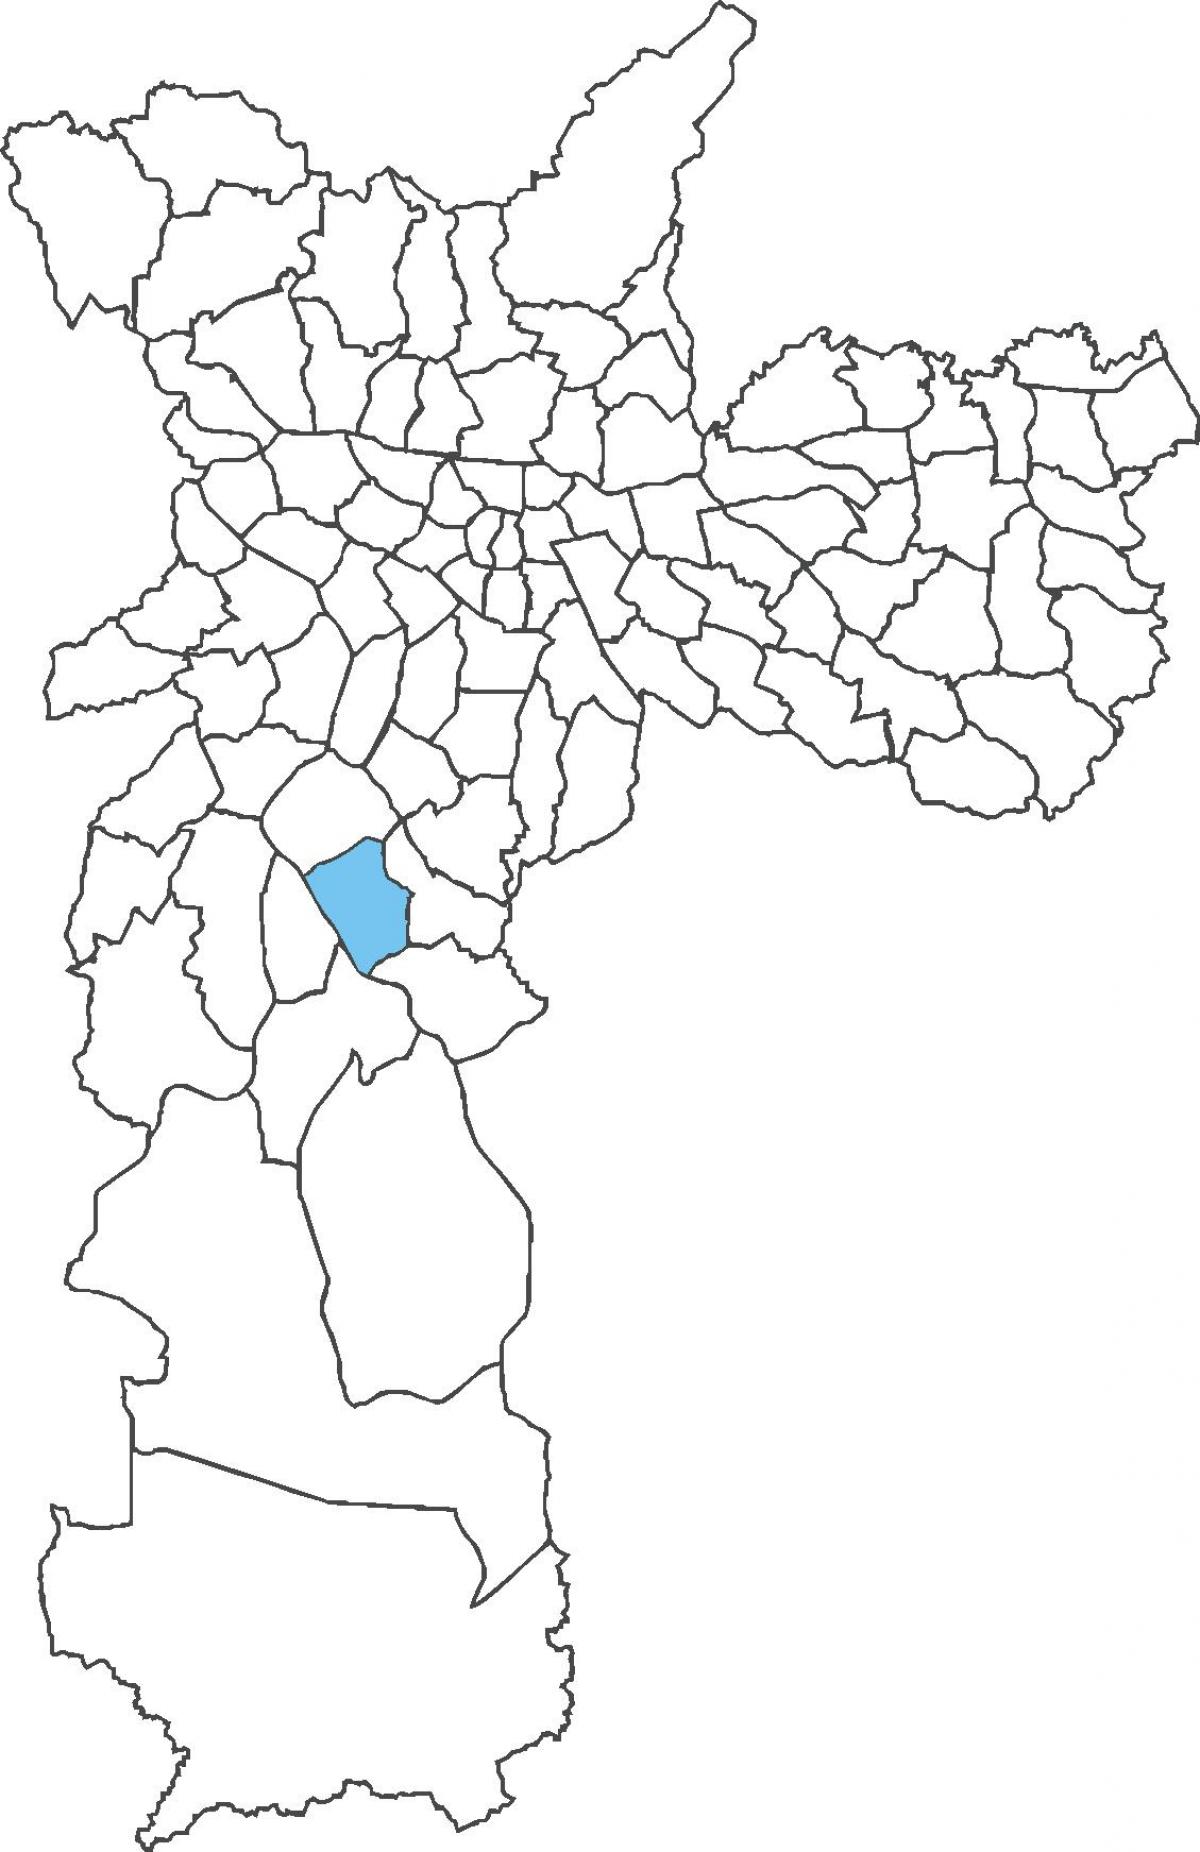 মানচিত্র ক্যাম্পো গ্র্যান্ডে জেলা